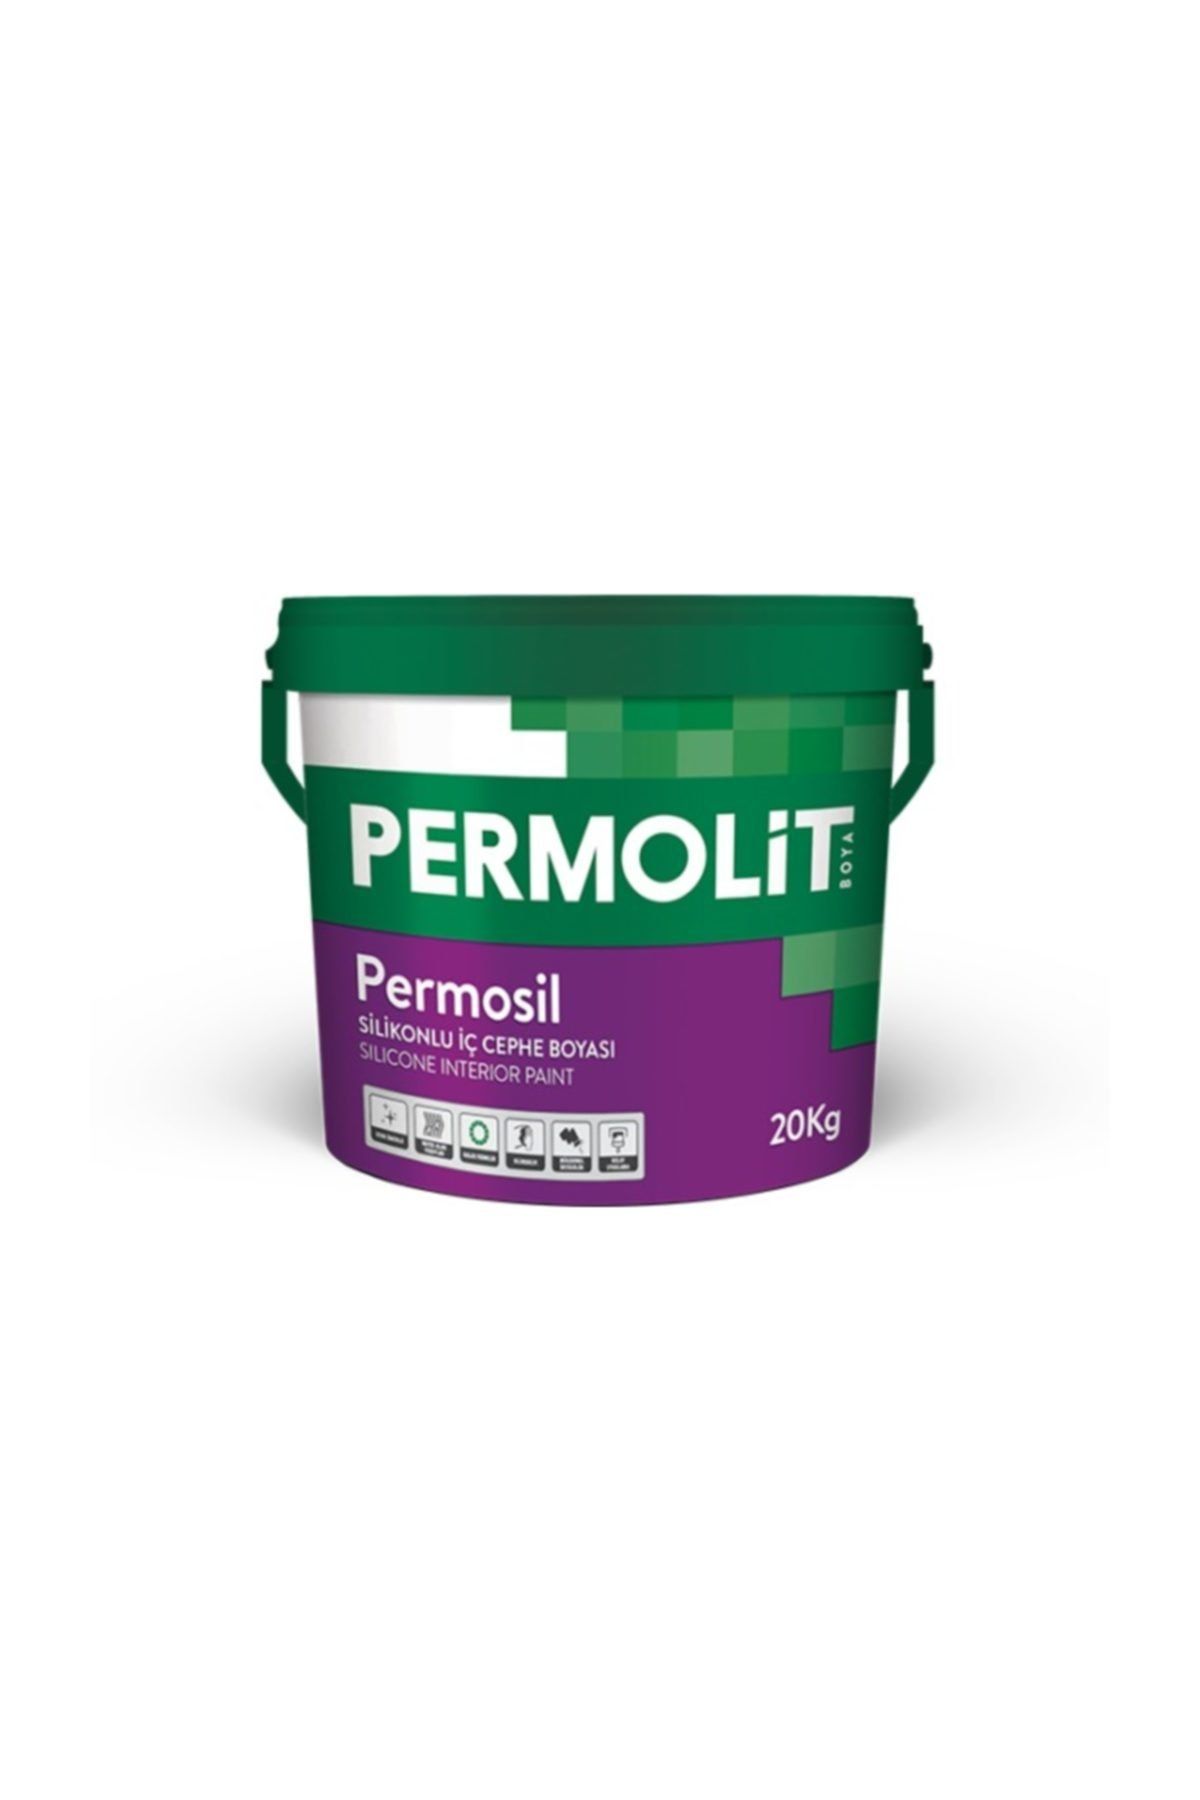 Permolit Permosil Silikonlu Iç Cephe Boyası 10 Kg  2216 Çakıl Taşı